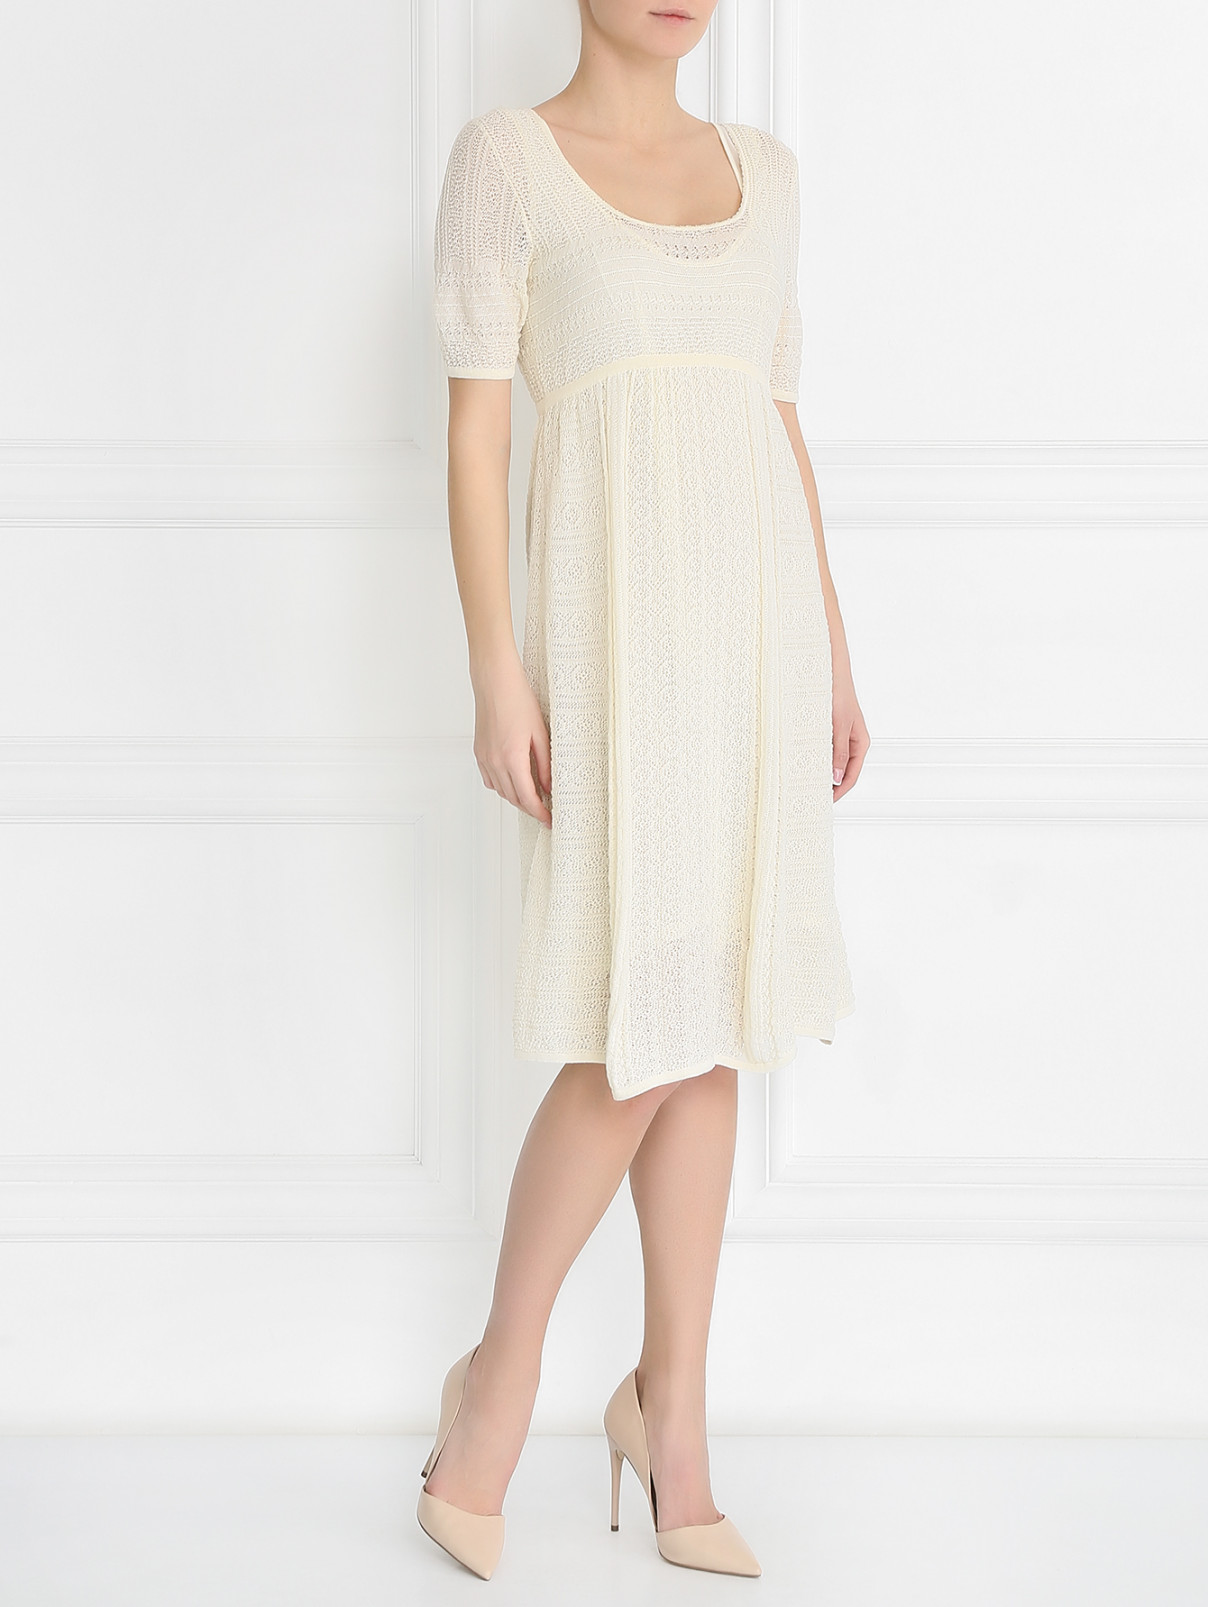 Трикотажное кружевное платье Ermanno Scervino  –  Модель Общий вид  – Цвет:  Белый